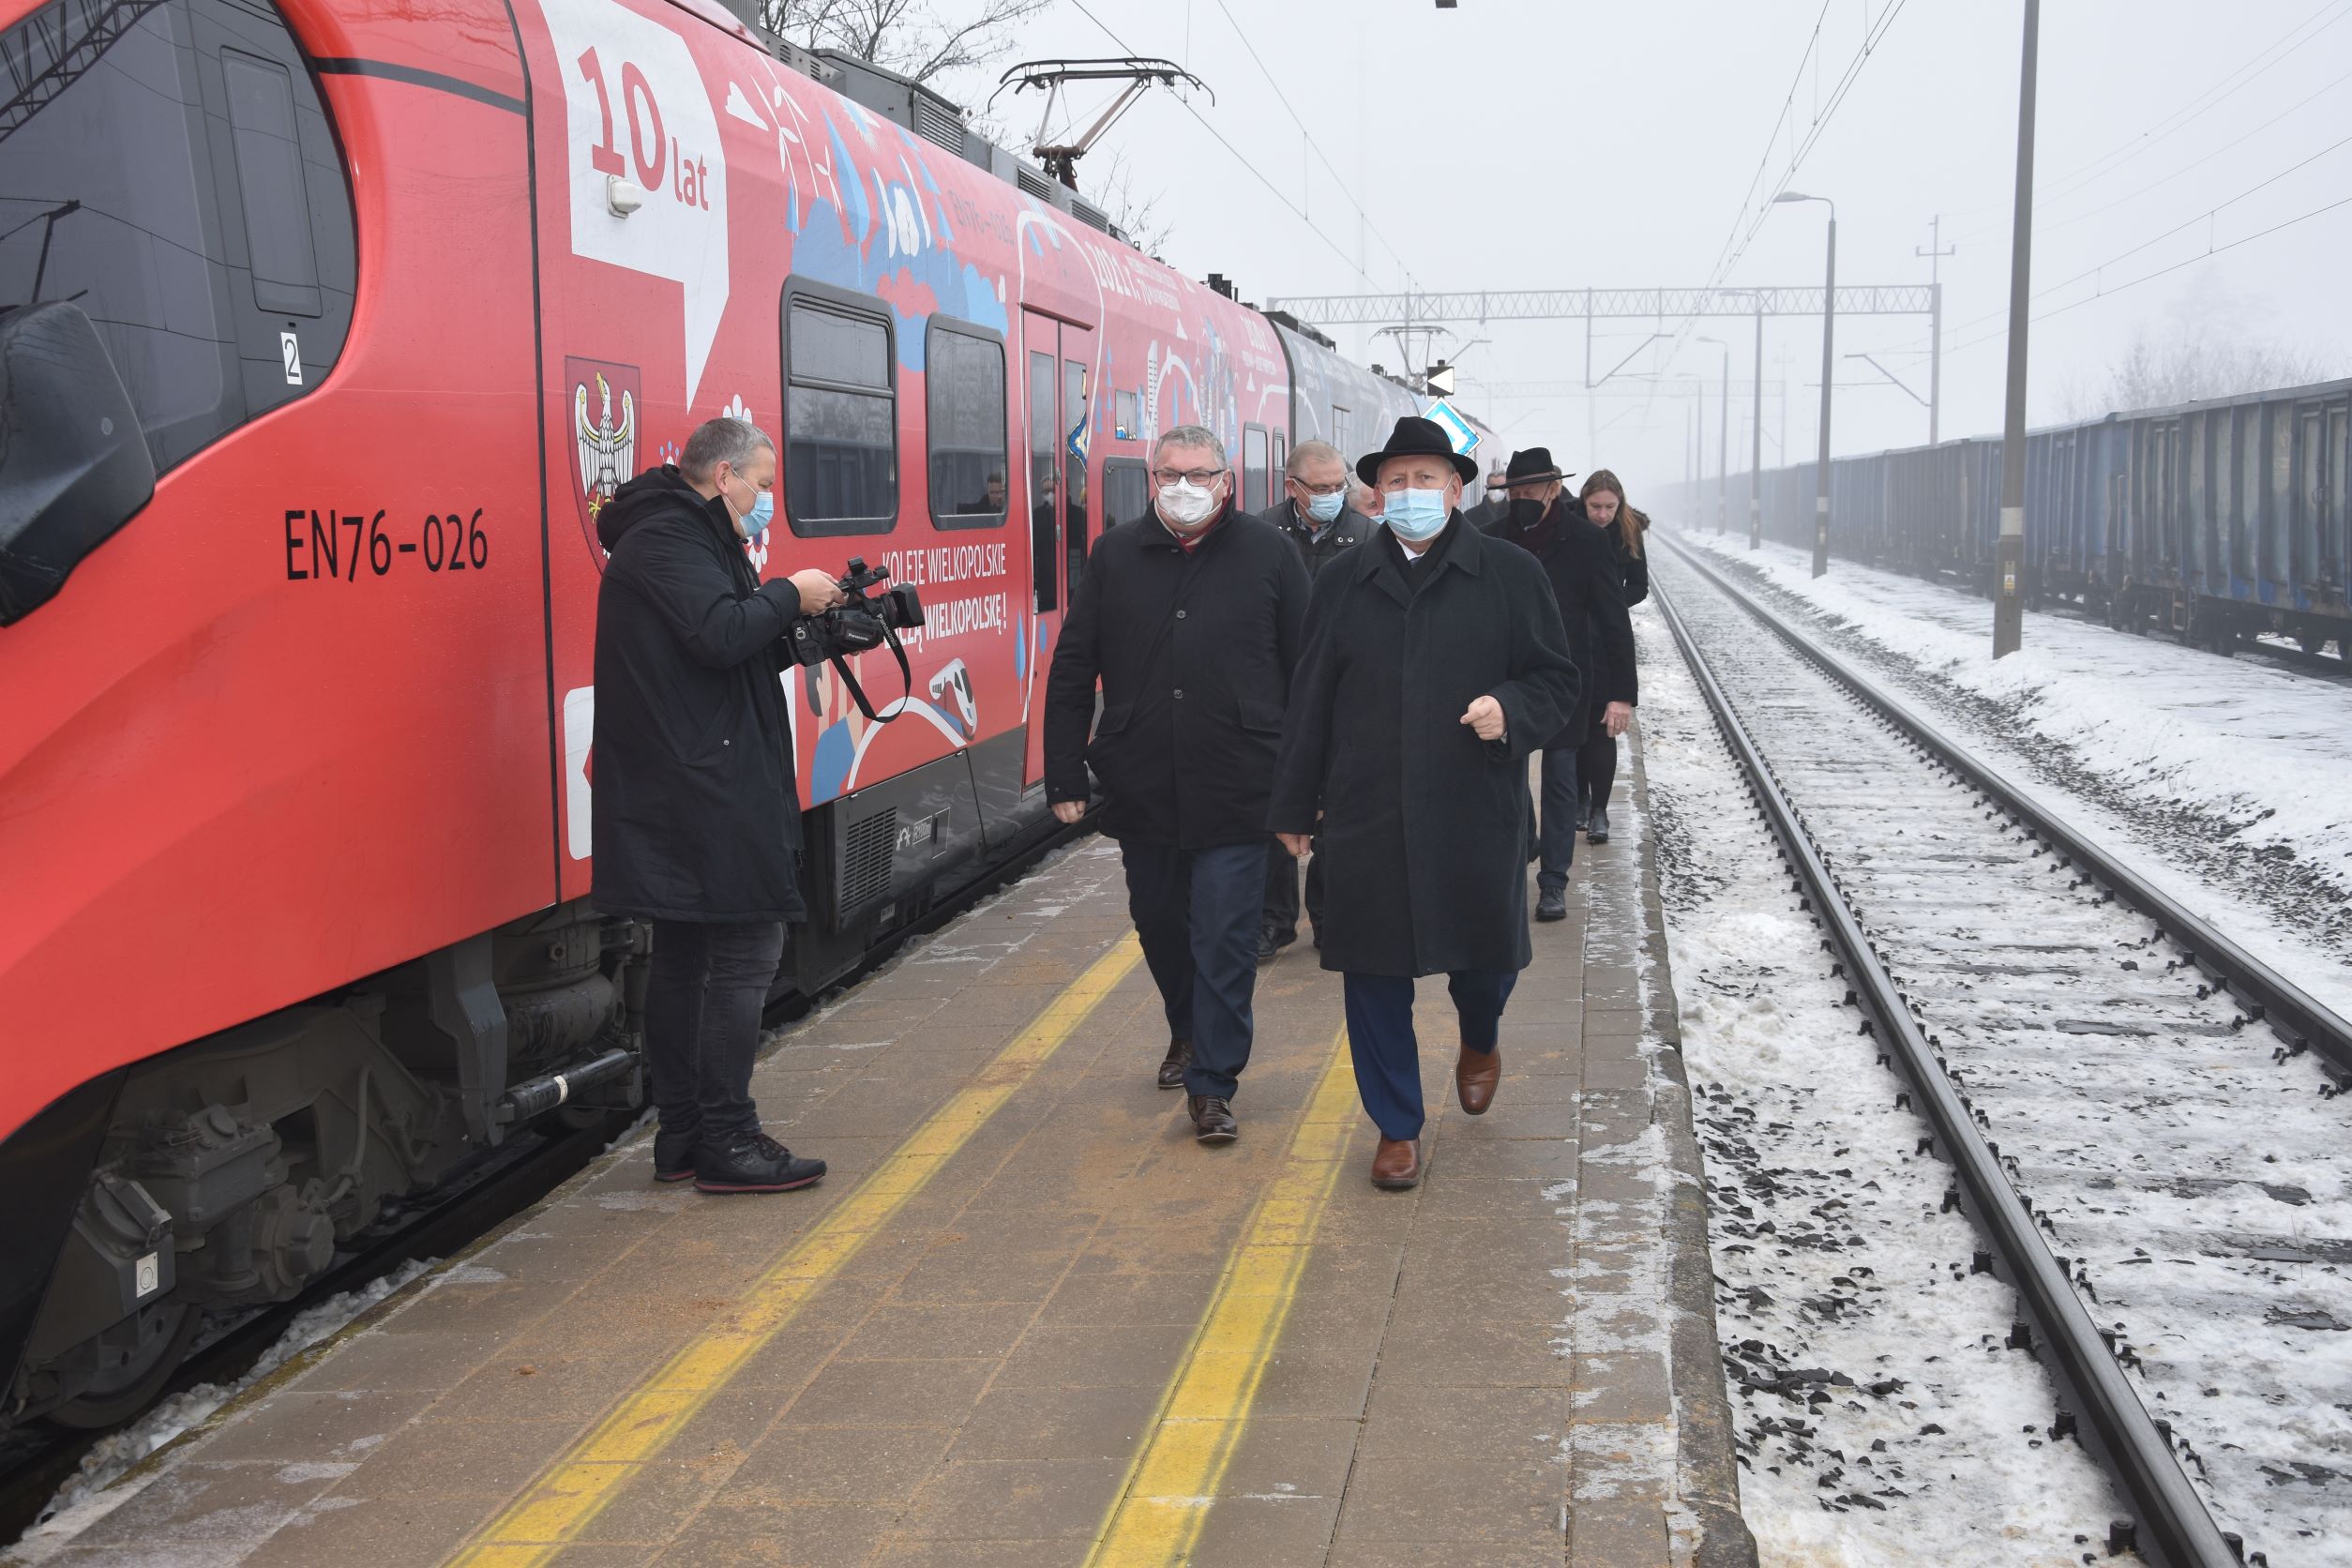 Uroczysta prezentacja nowych połączeń kolejowych z Poznaniem